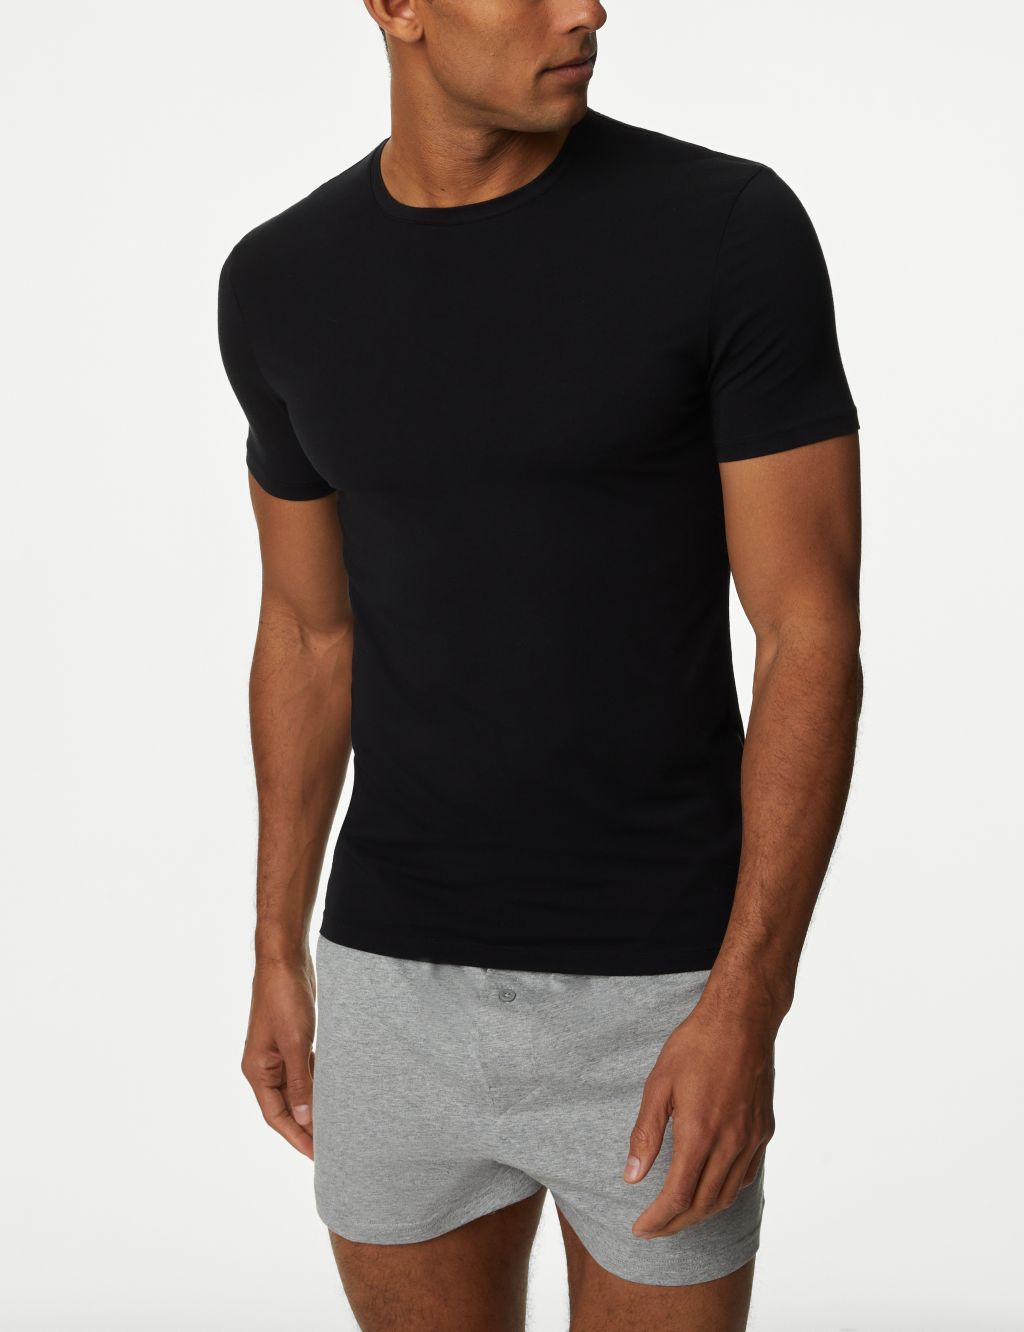 Supima® Cotton Blend T-Shirt Vest image 1